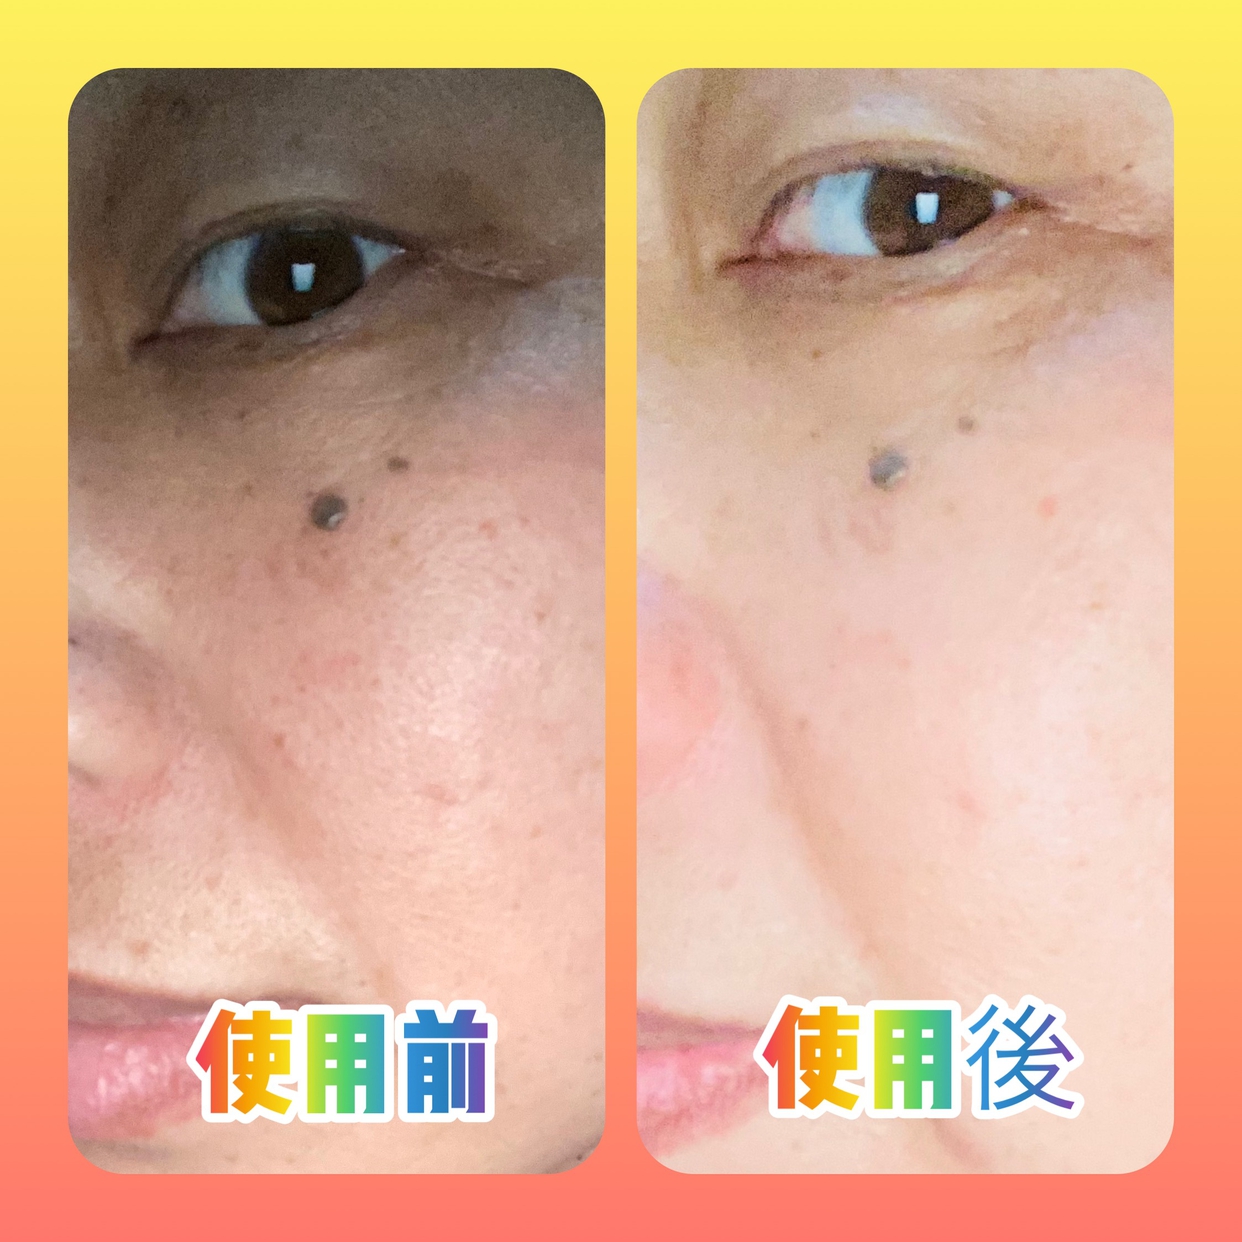 carenainai(ケアナイナイ) 酵素洗顔パウダーを使ったマイピコブーさんのクチコミ画像4